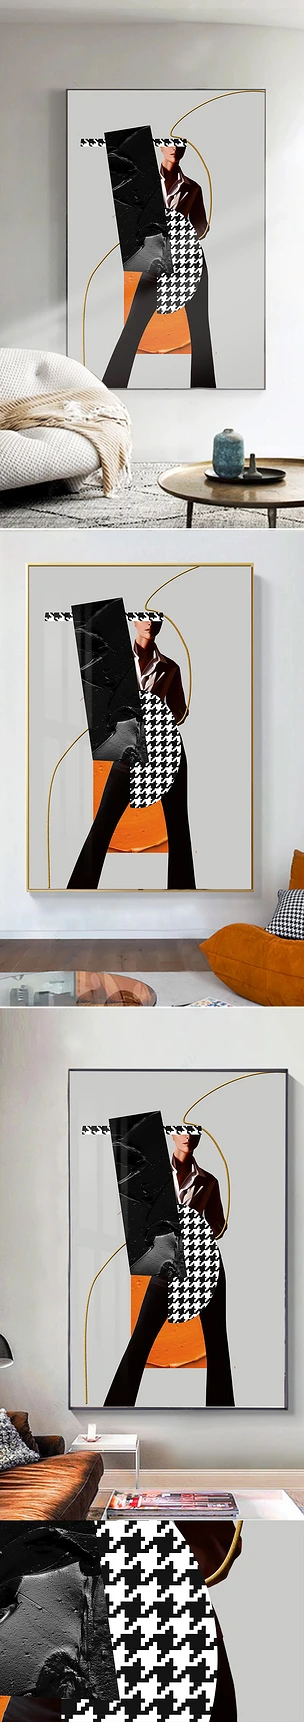 现代客厅黑白人物玄关极简创意沙发巨幅装饰画